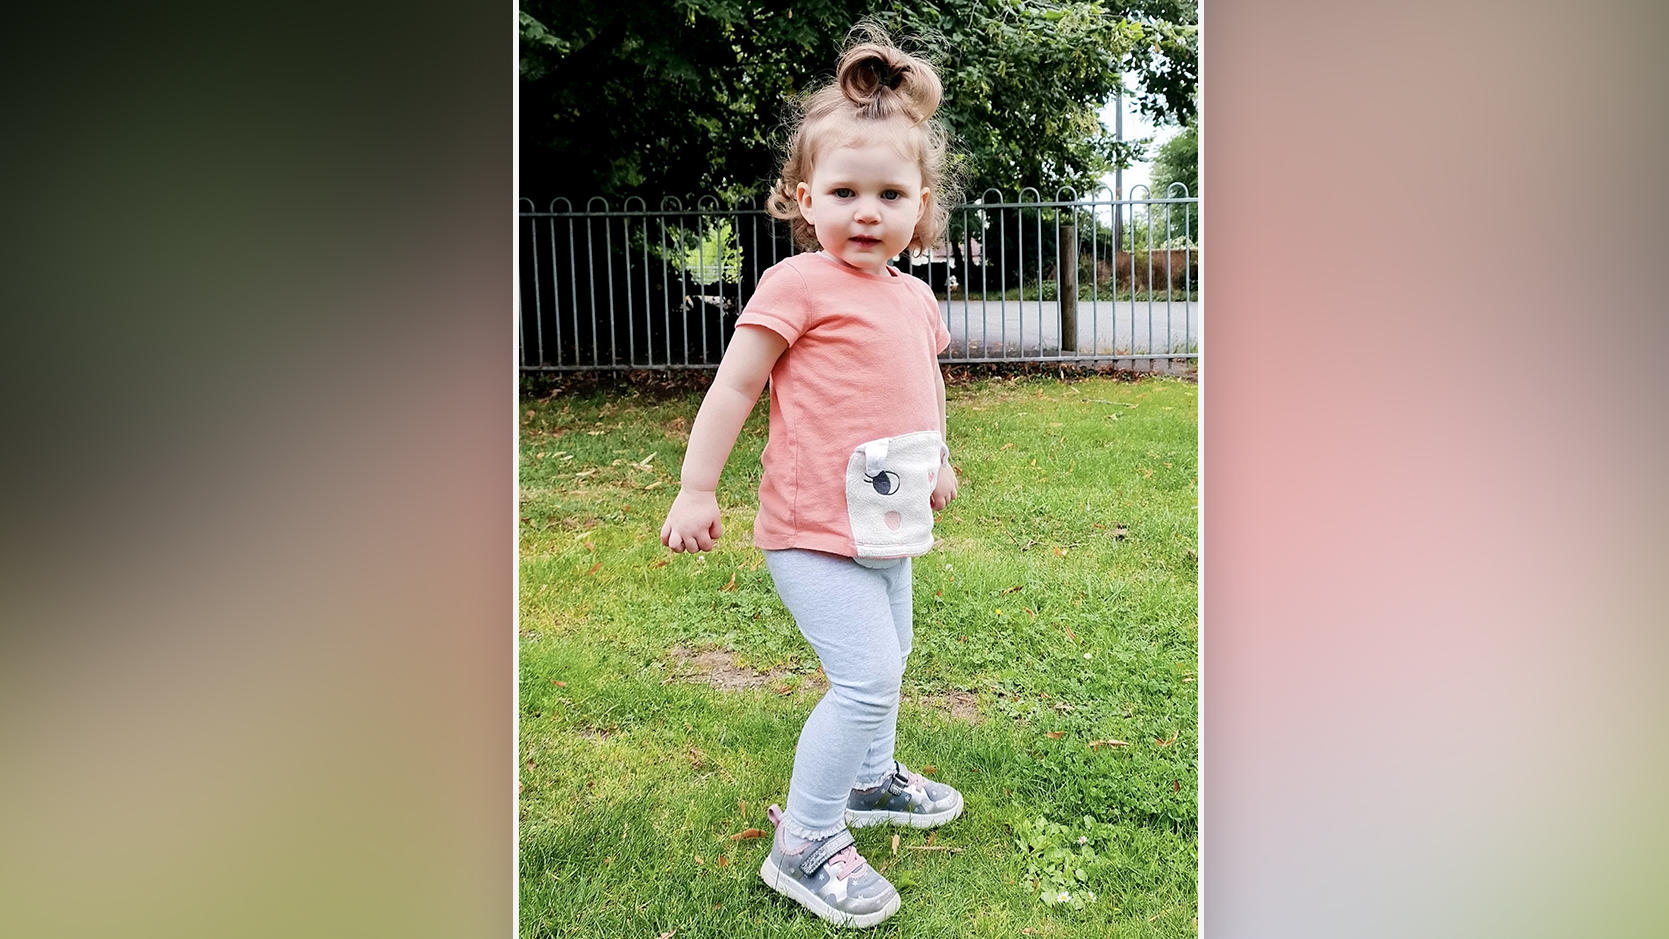 Von ihrer Mutter wird die zweijährige Grace Fraser als aufgewecktes und abenteuerlustiges Mädchen beschrieben. Derzeit kämpft sie jedoch gegen einen seltenen Krebs.